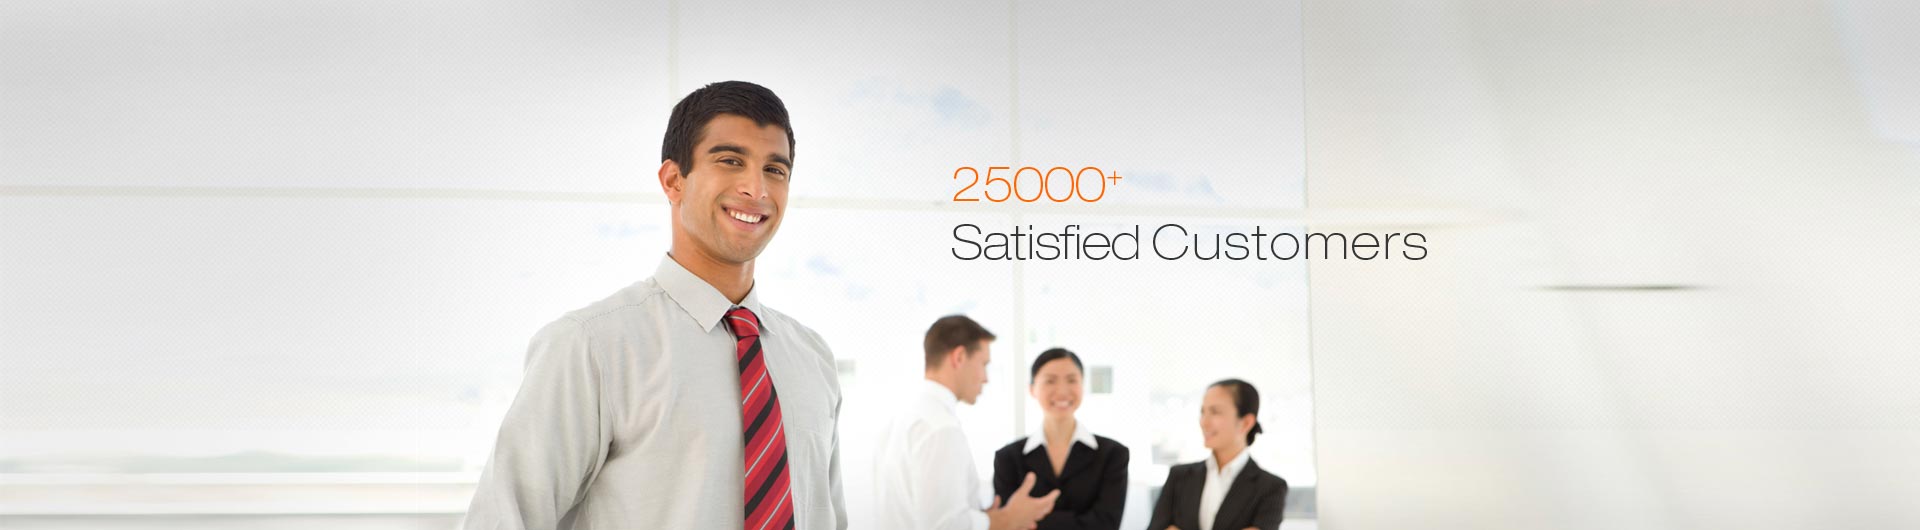 25000 Plus satisfied customers